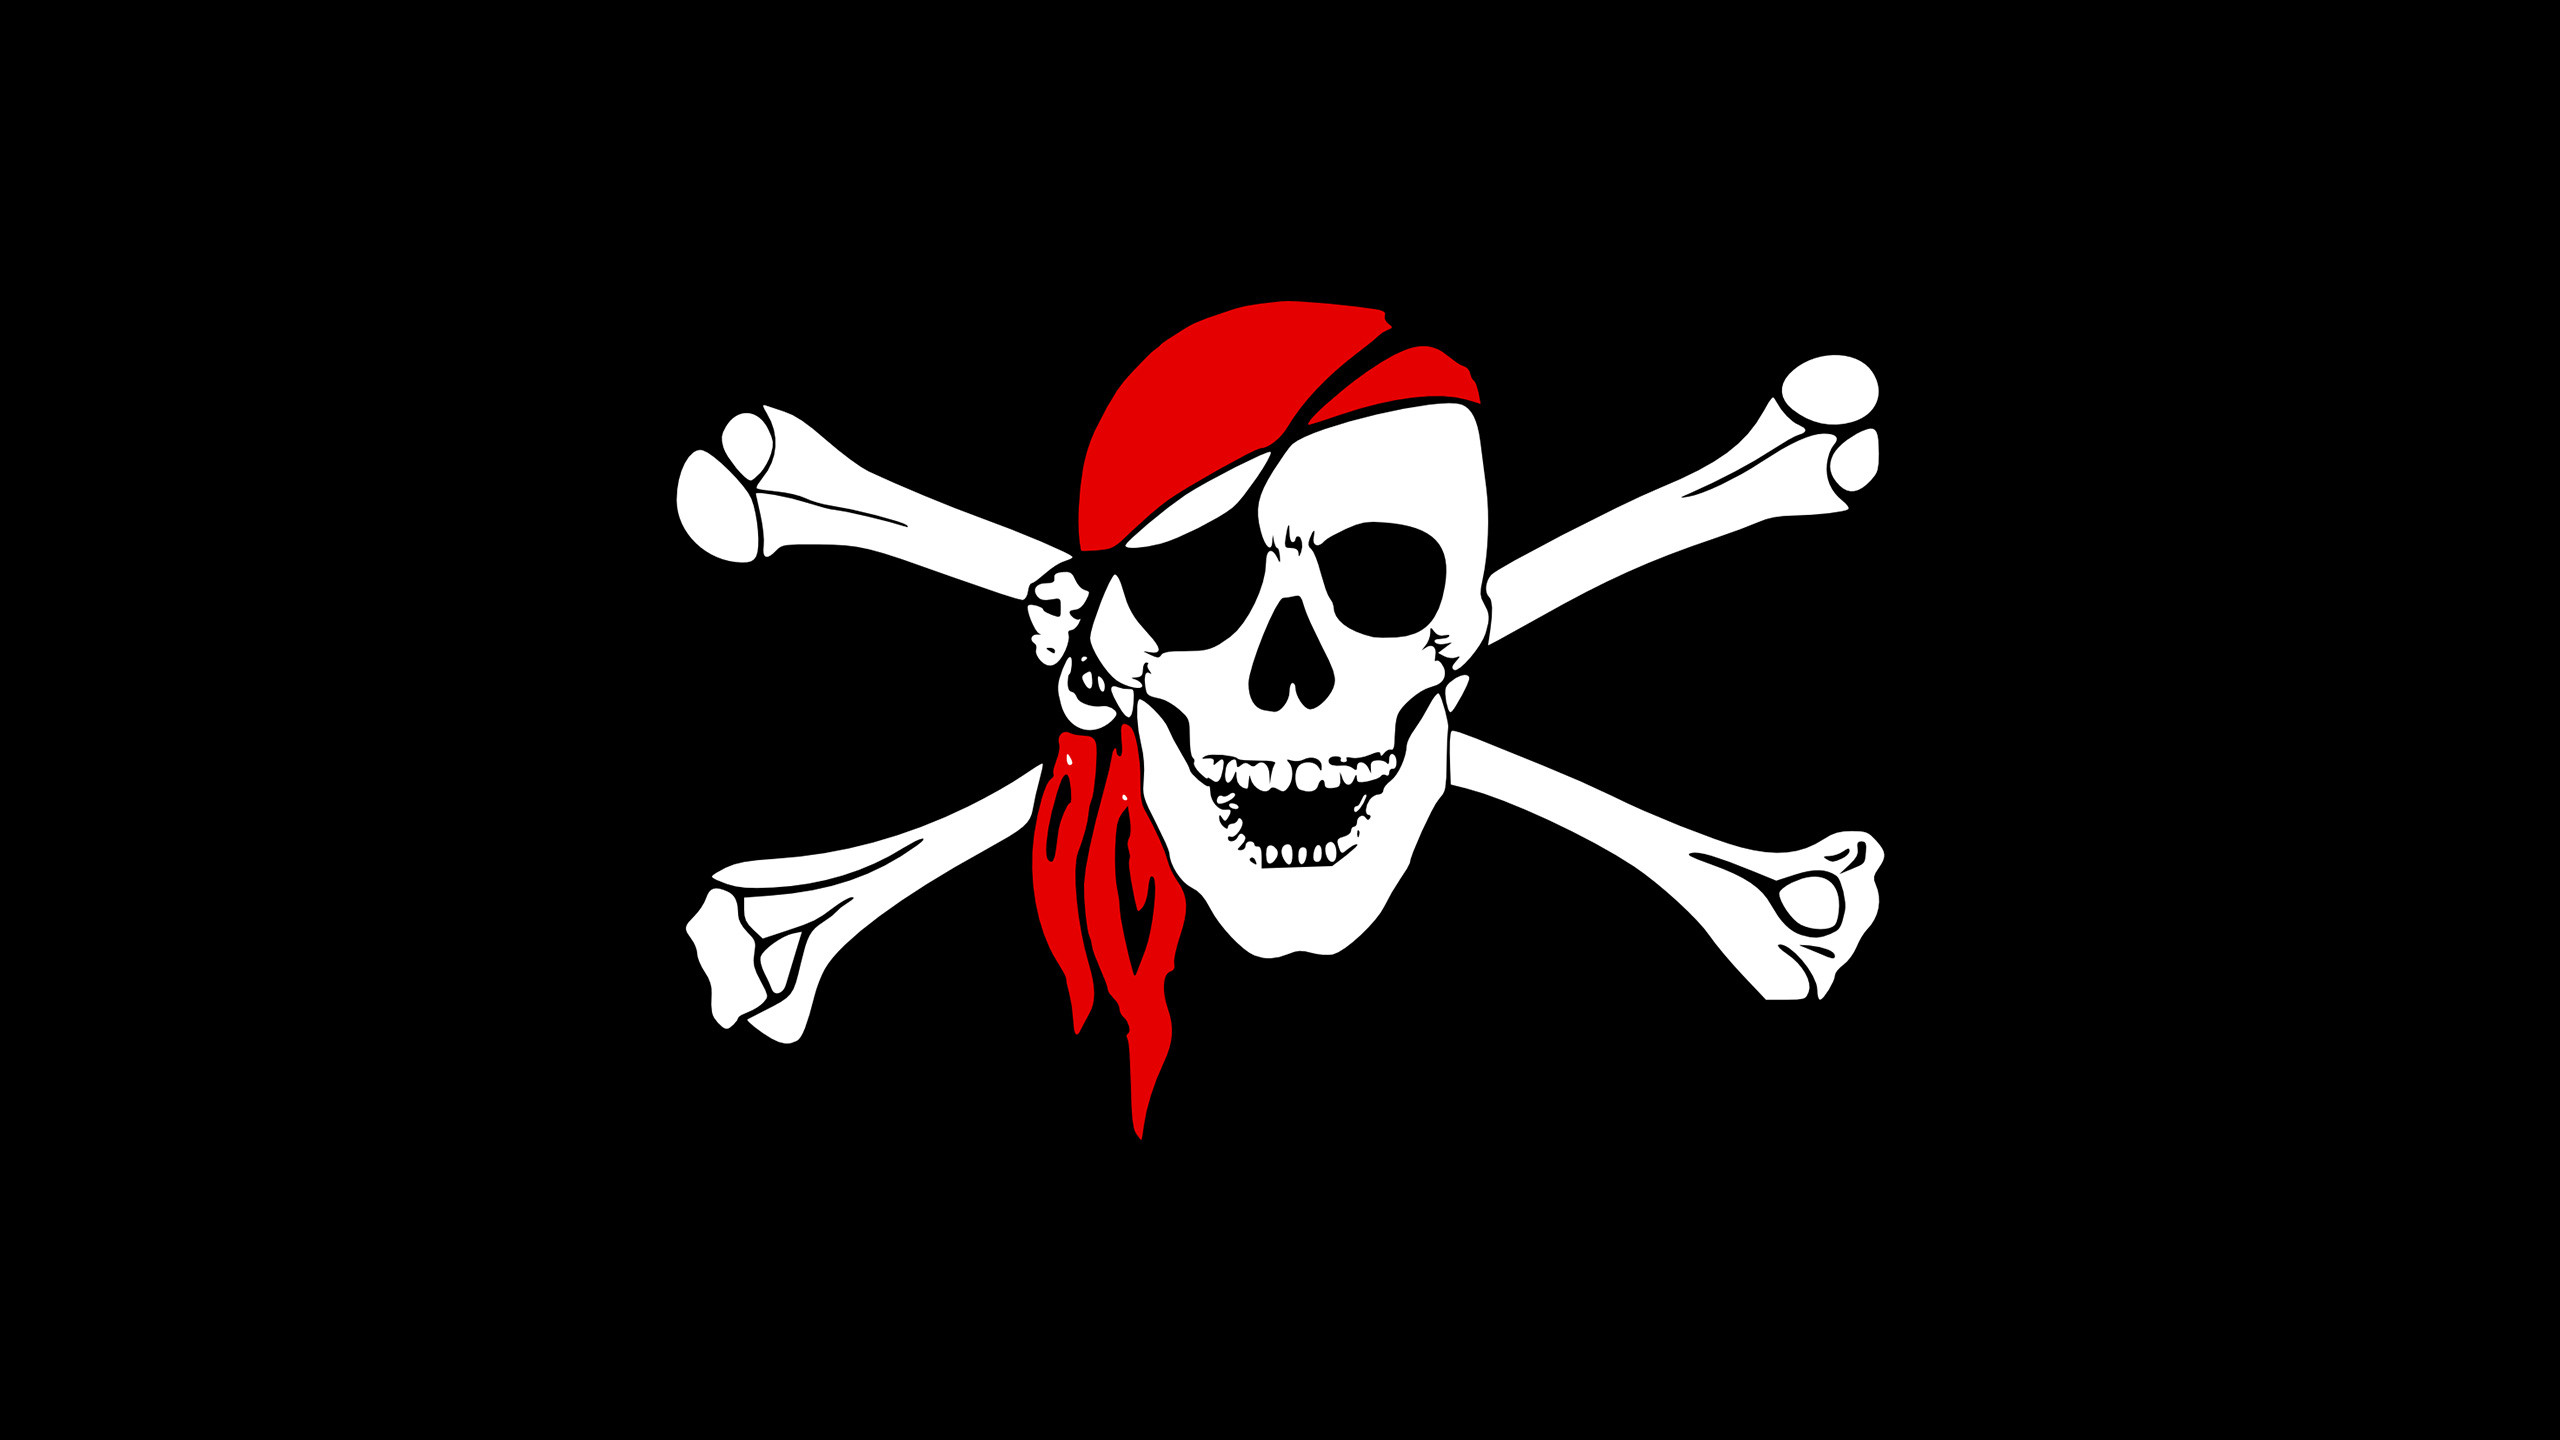 pirate flag wallpaper,bone,skull,flag,logo,illustration